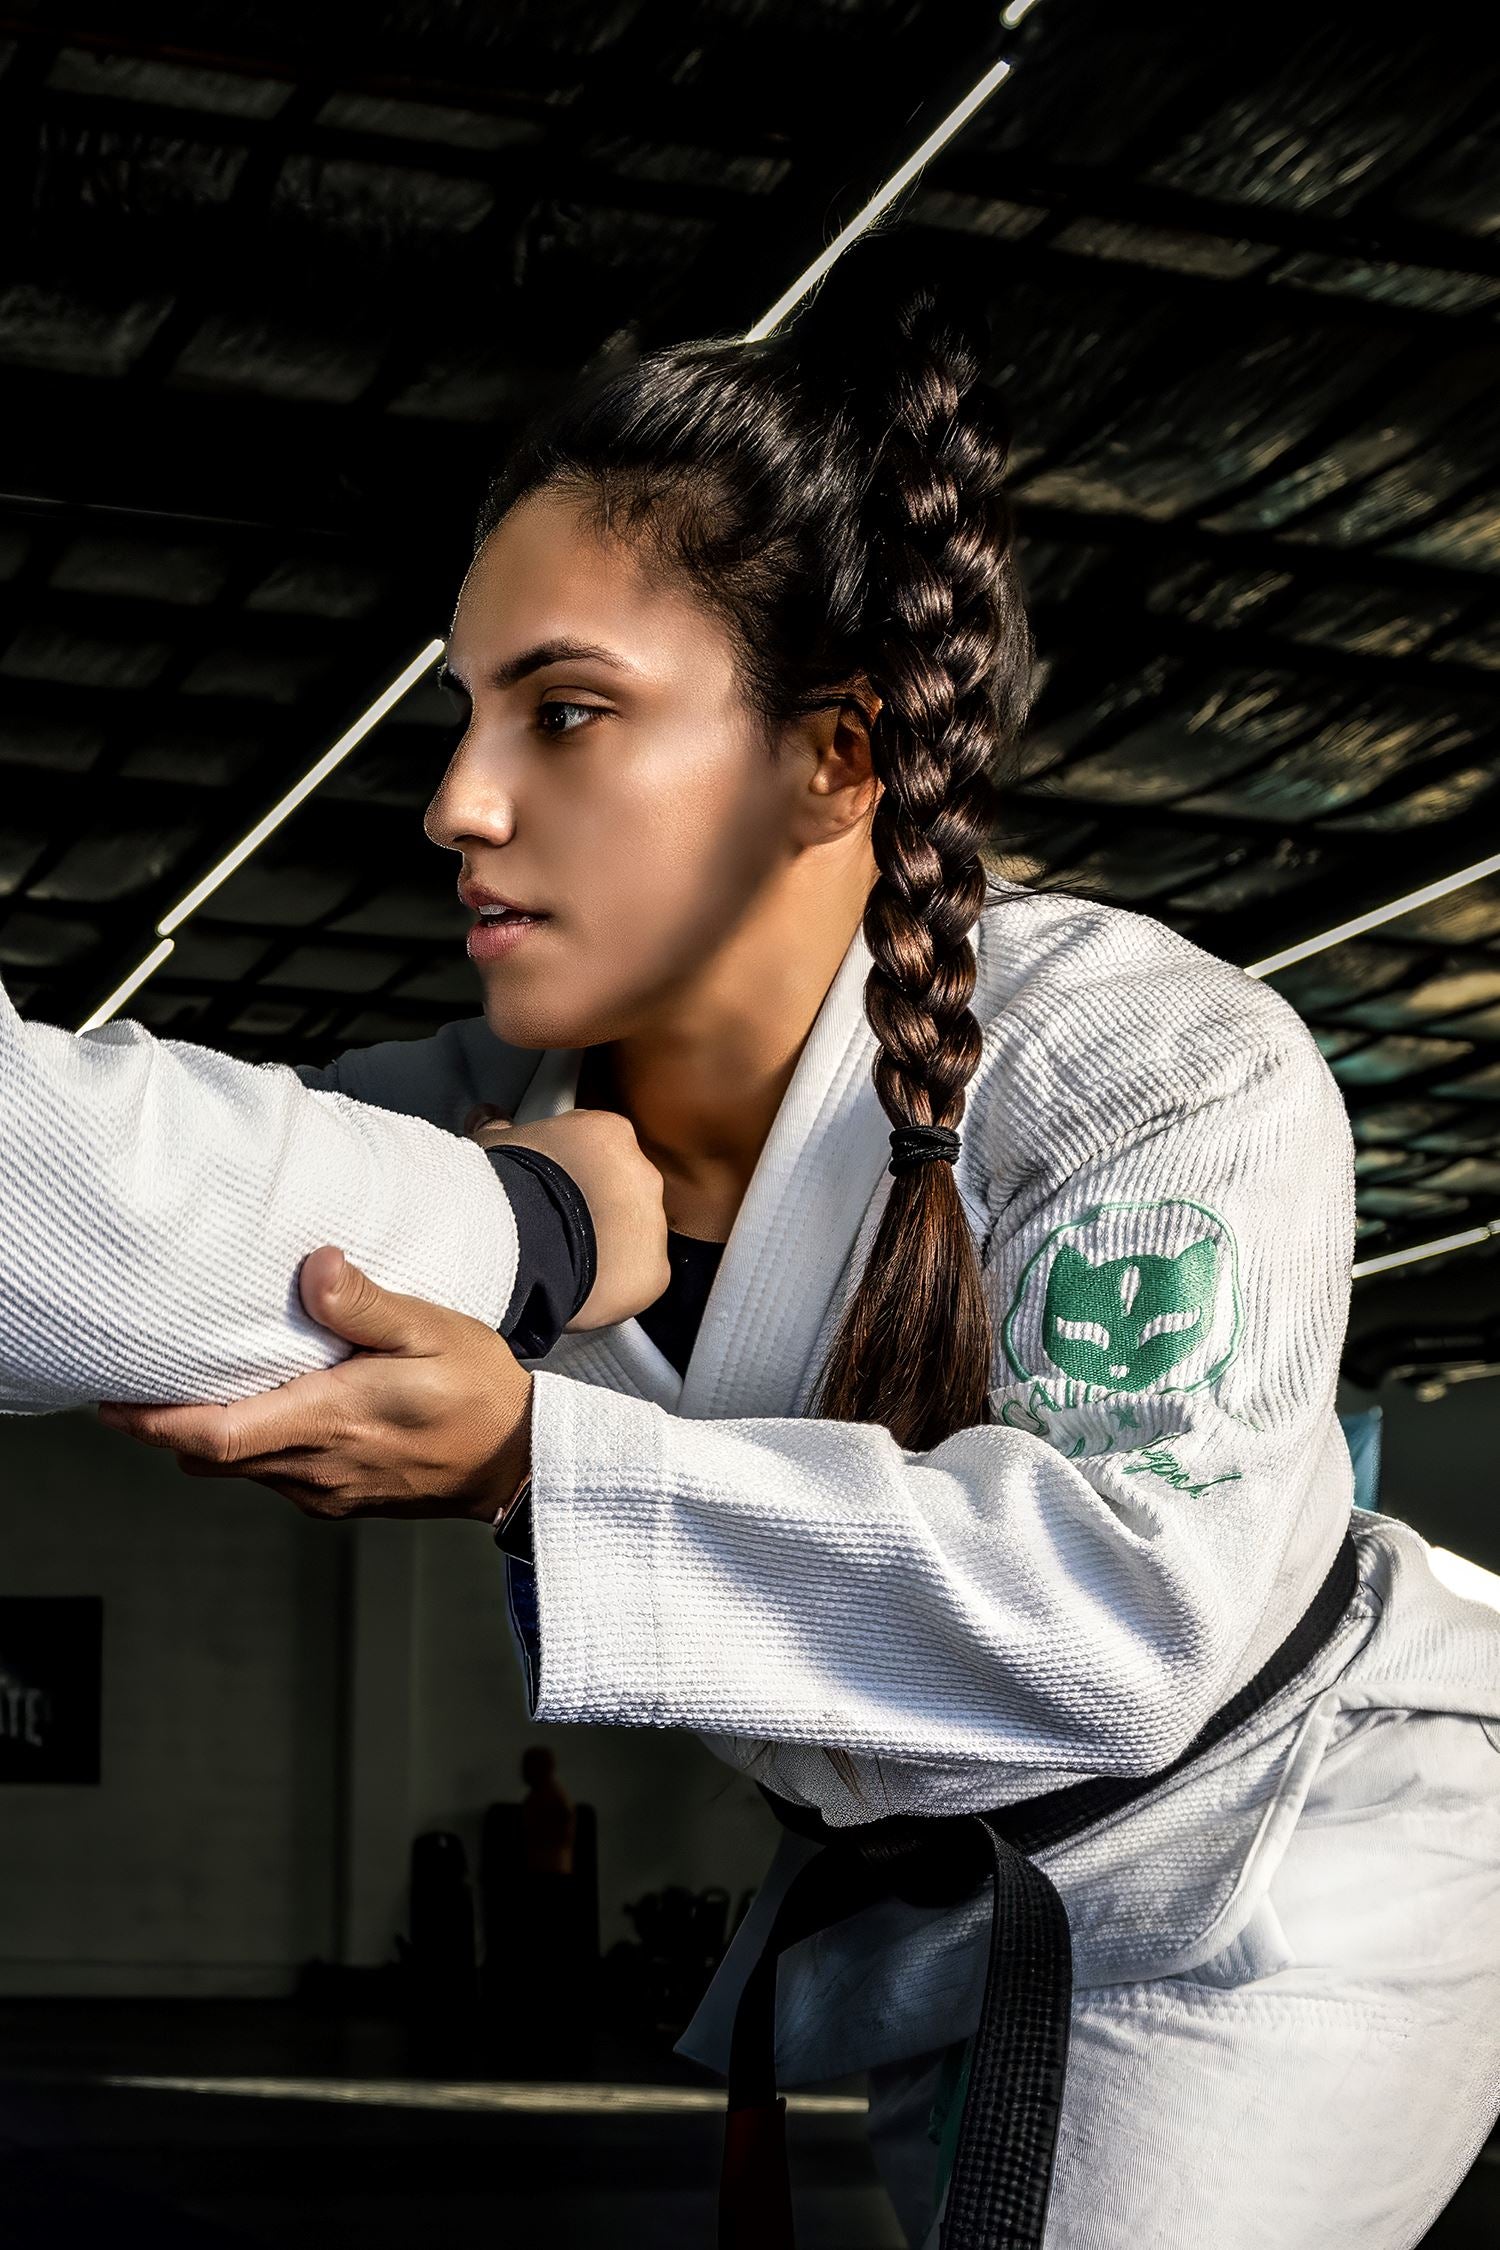 Women's Perfect Fit Jiu Jitsu Gi - Pants – GAIDAMA